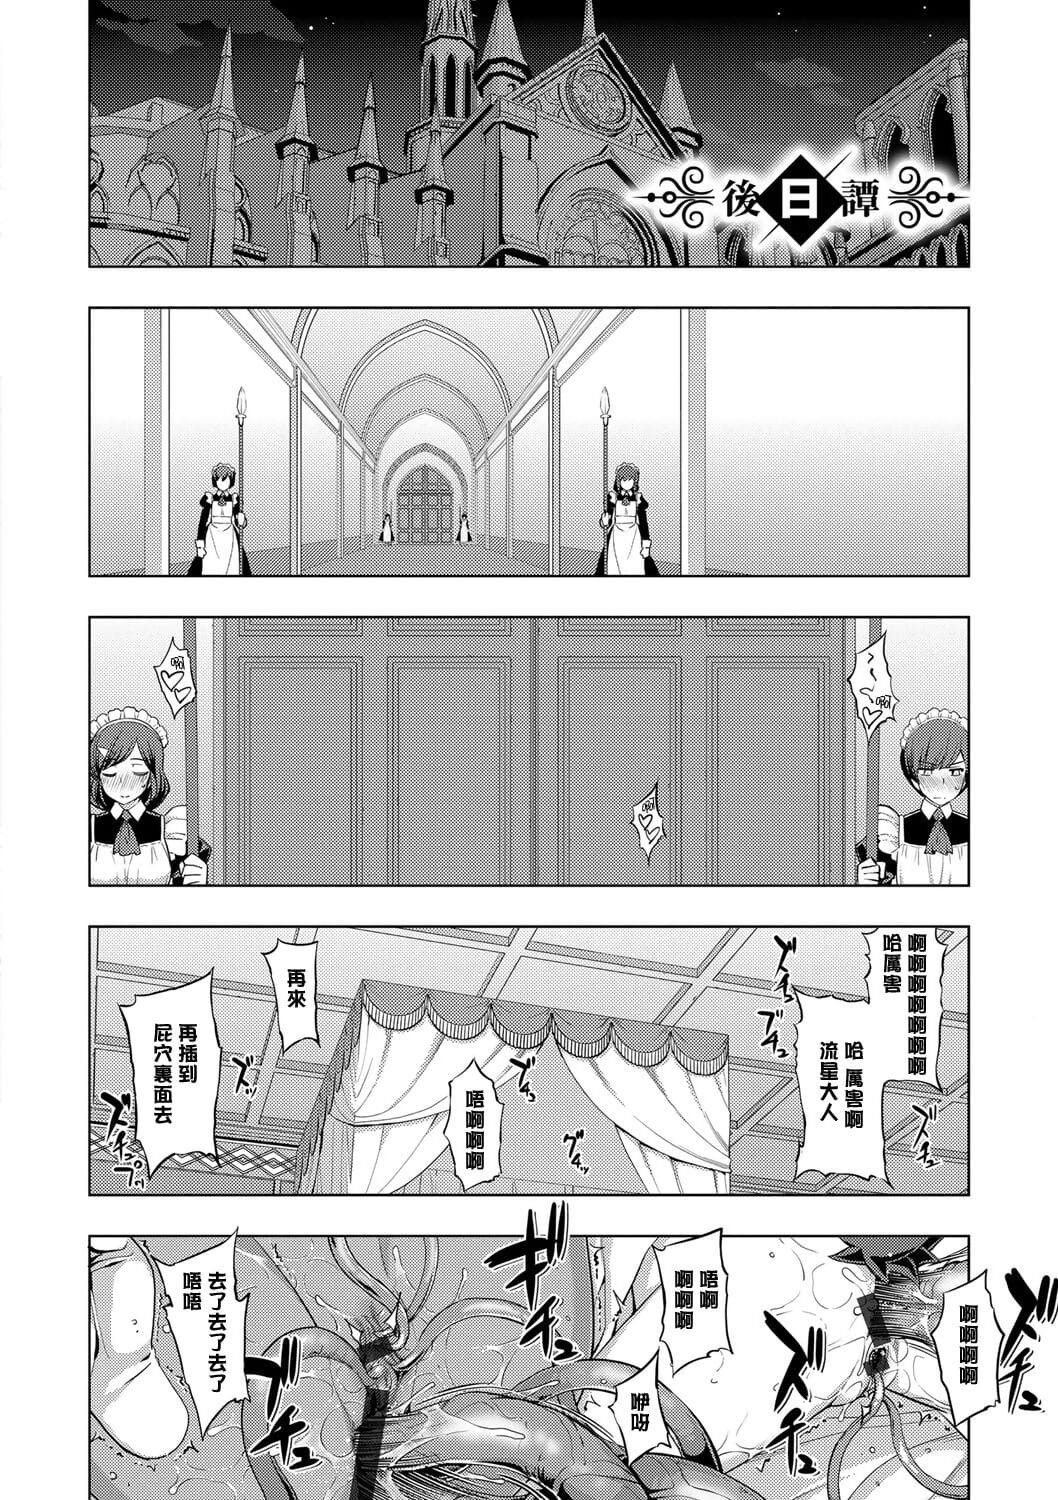 Maken no Kishi Saishuumaku - part 2 page 1